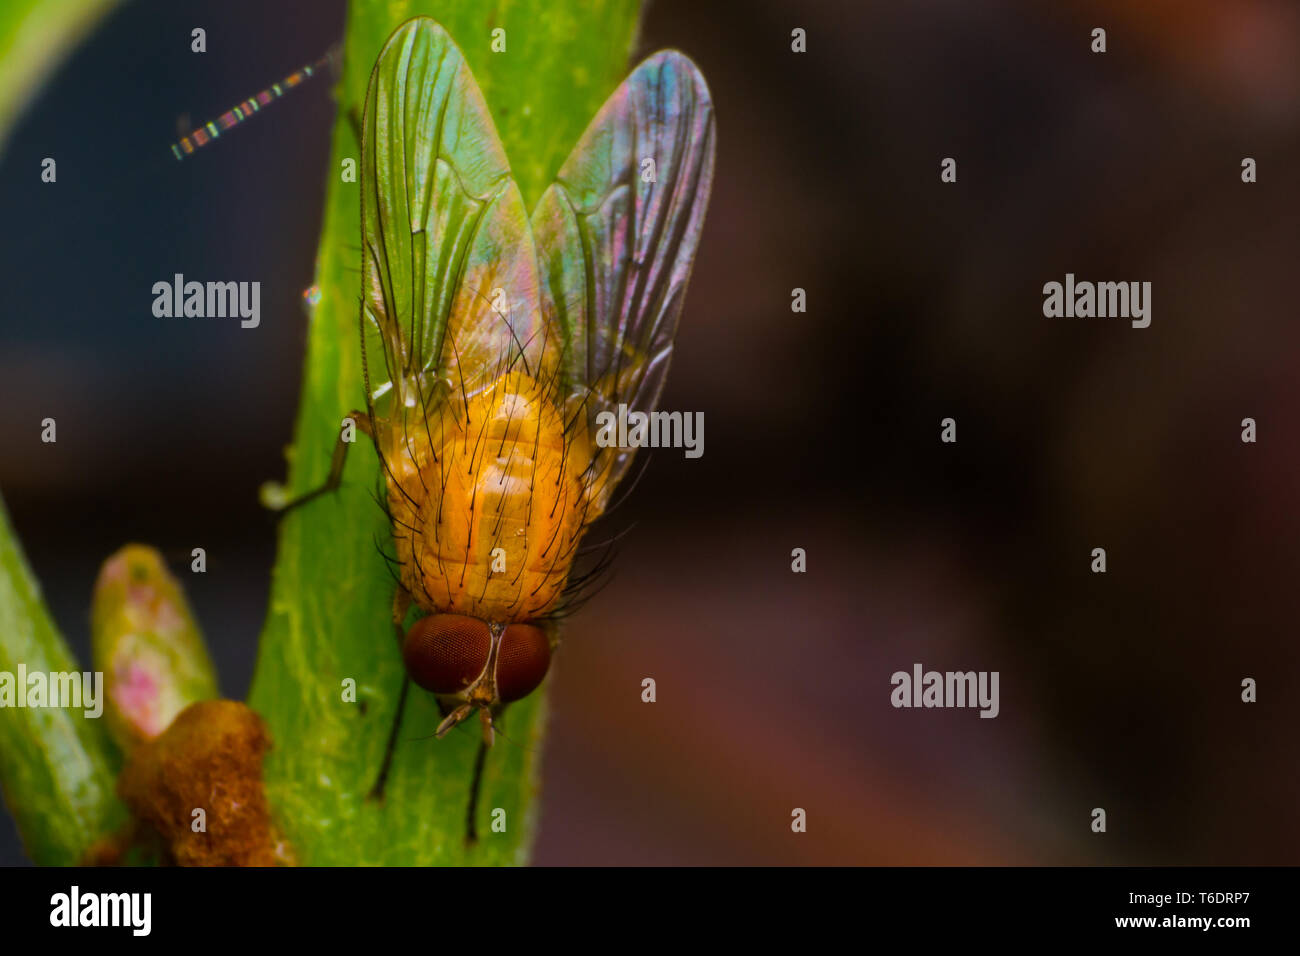 La mouche des fruits jaune-orange avec de grands yeux orange, sur la surface verte Banque D'Images